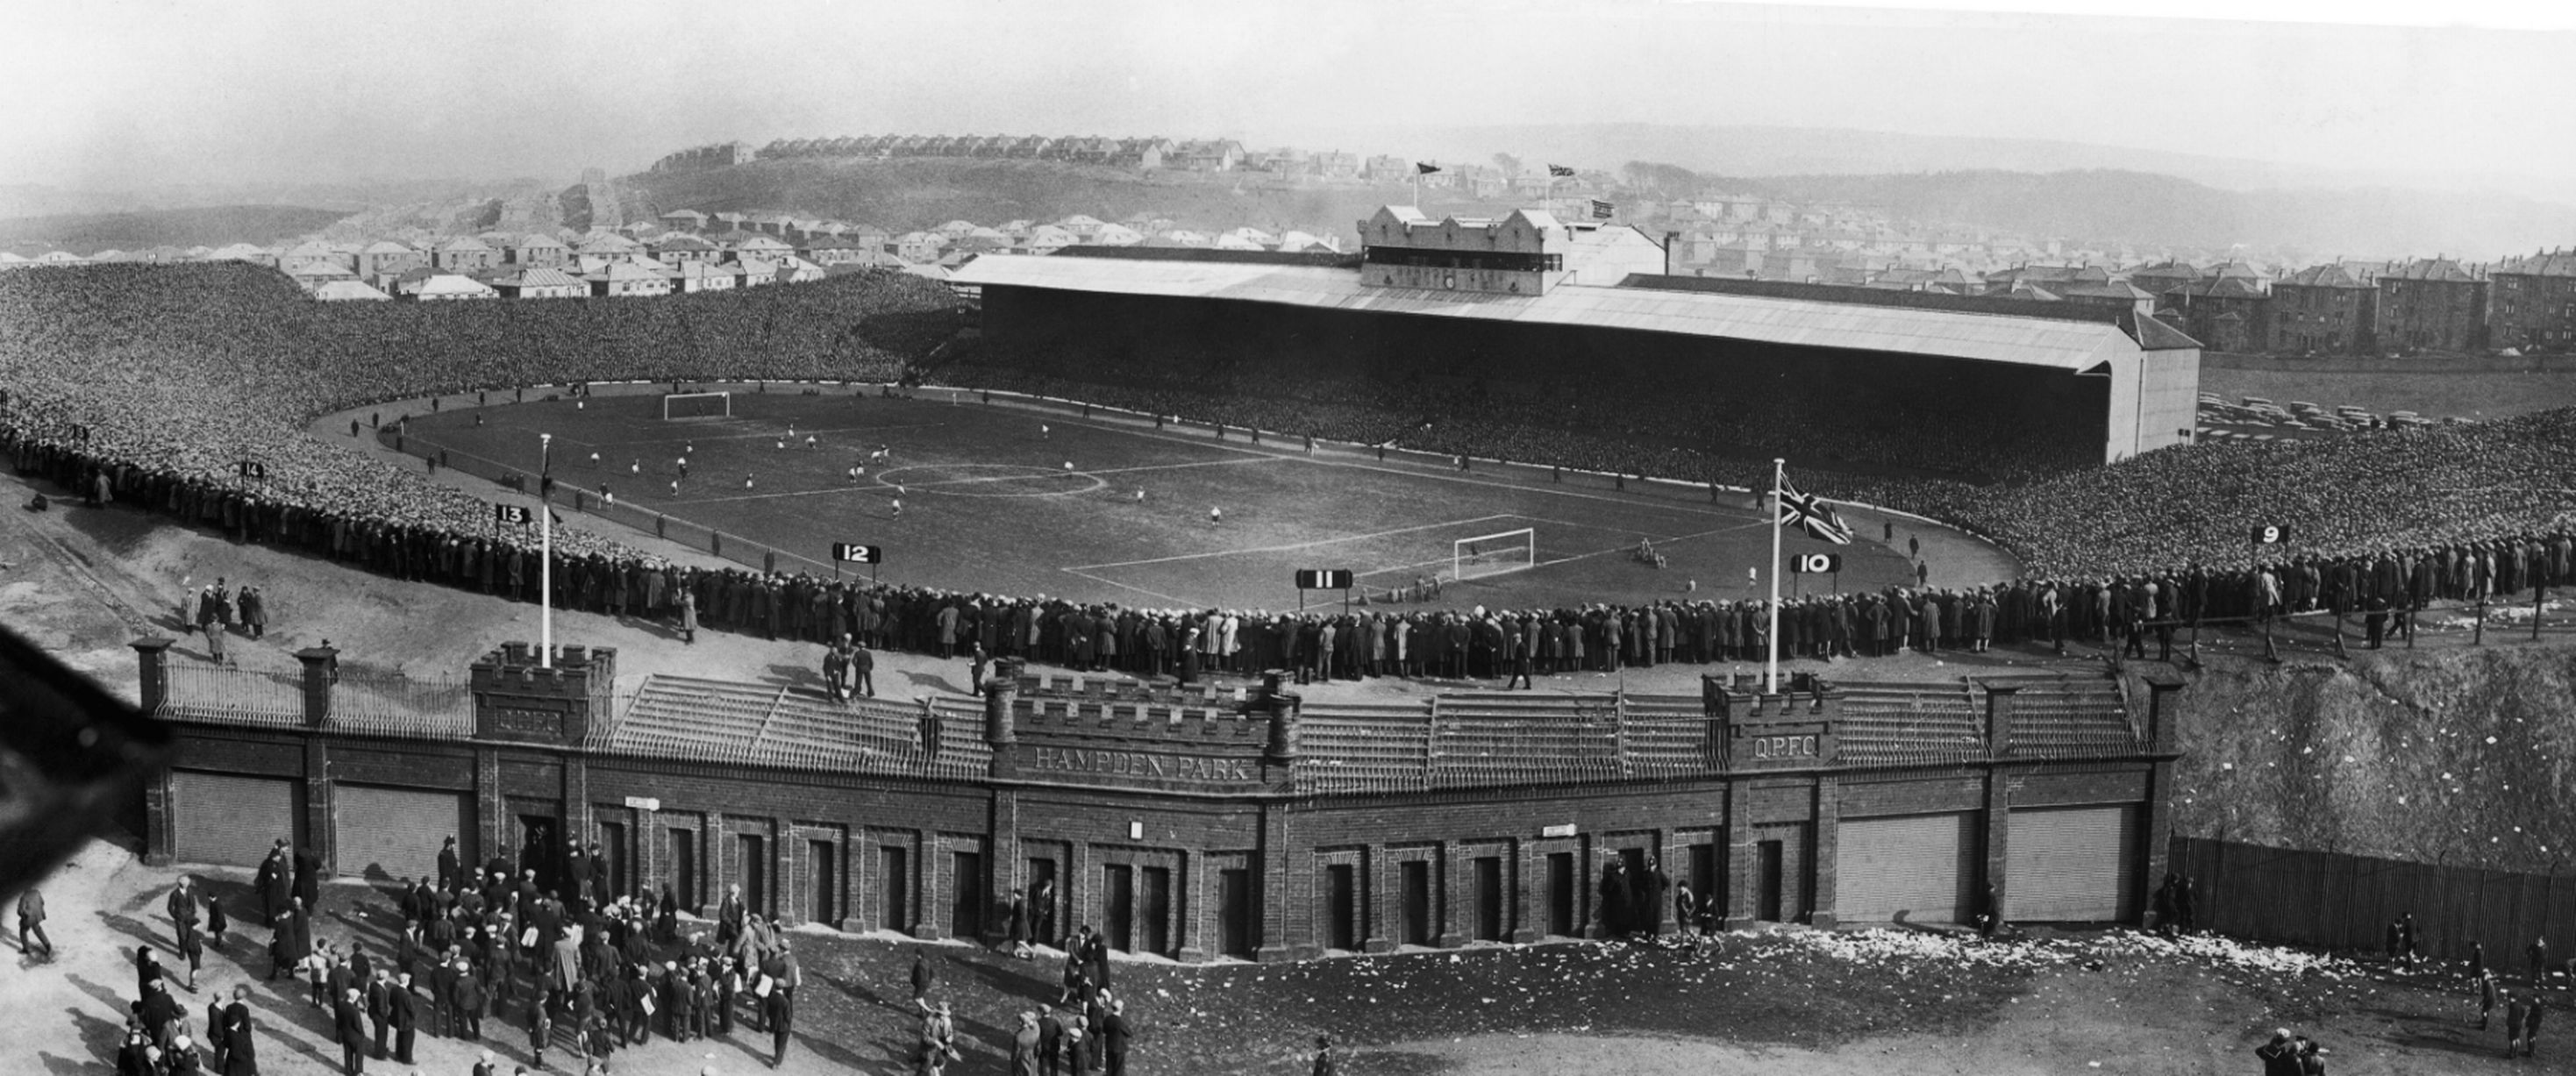 hampden-park-1930s-cup-final.jpg